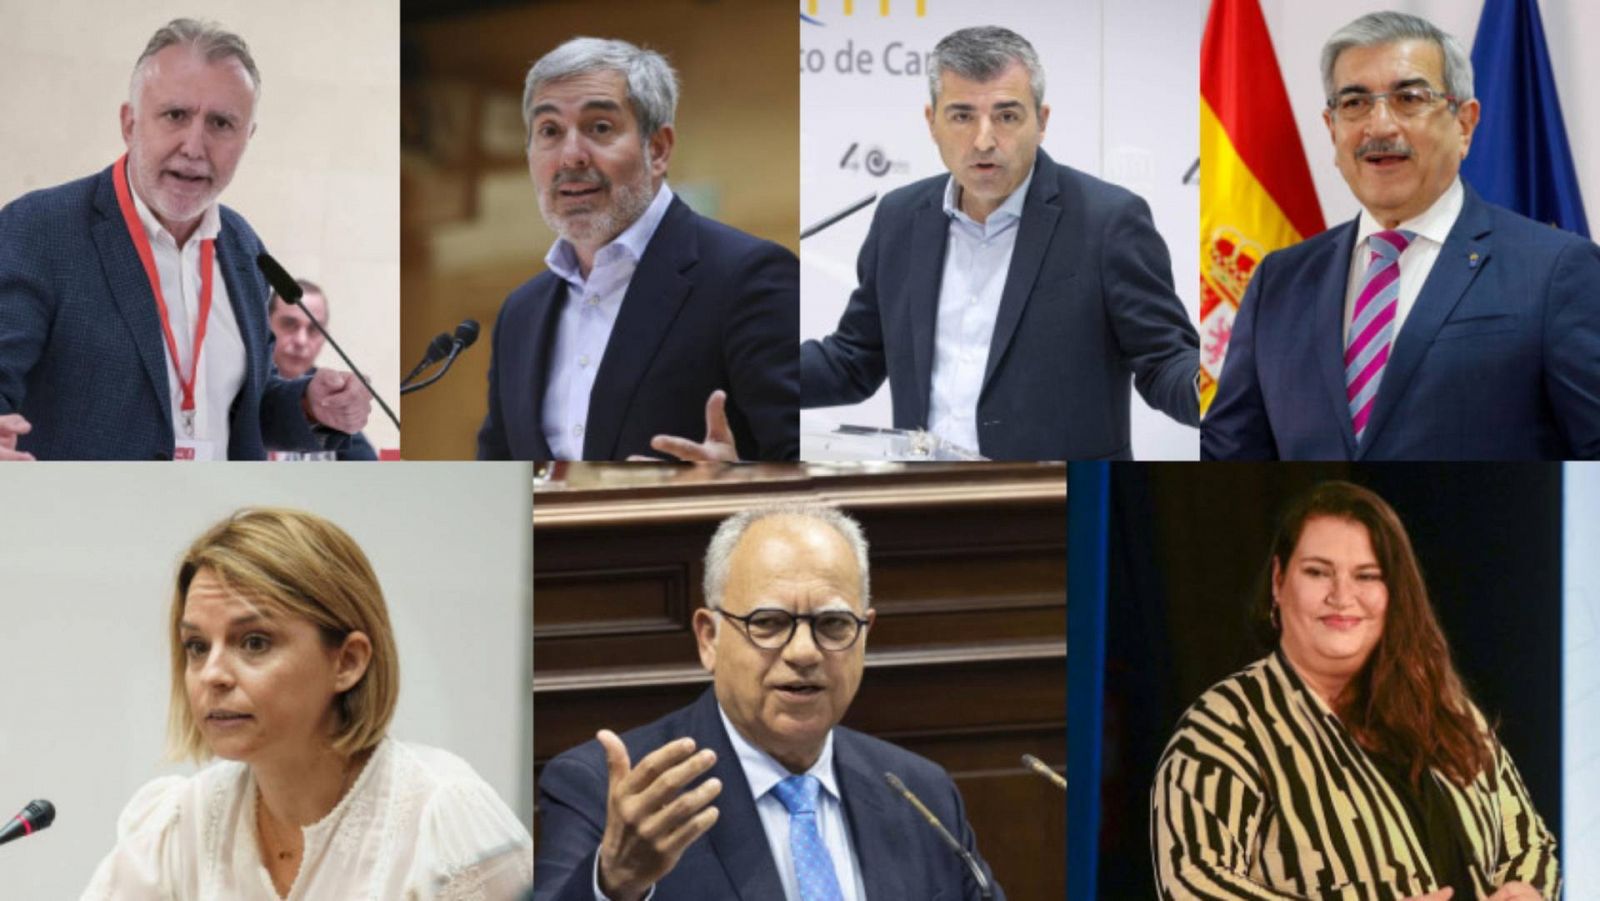 Los candidatos al 28M con representación en Canarias